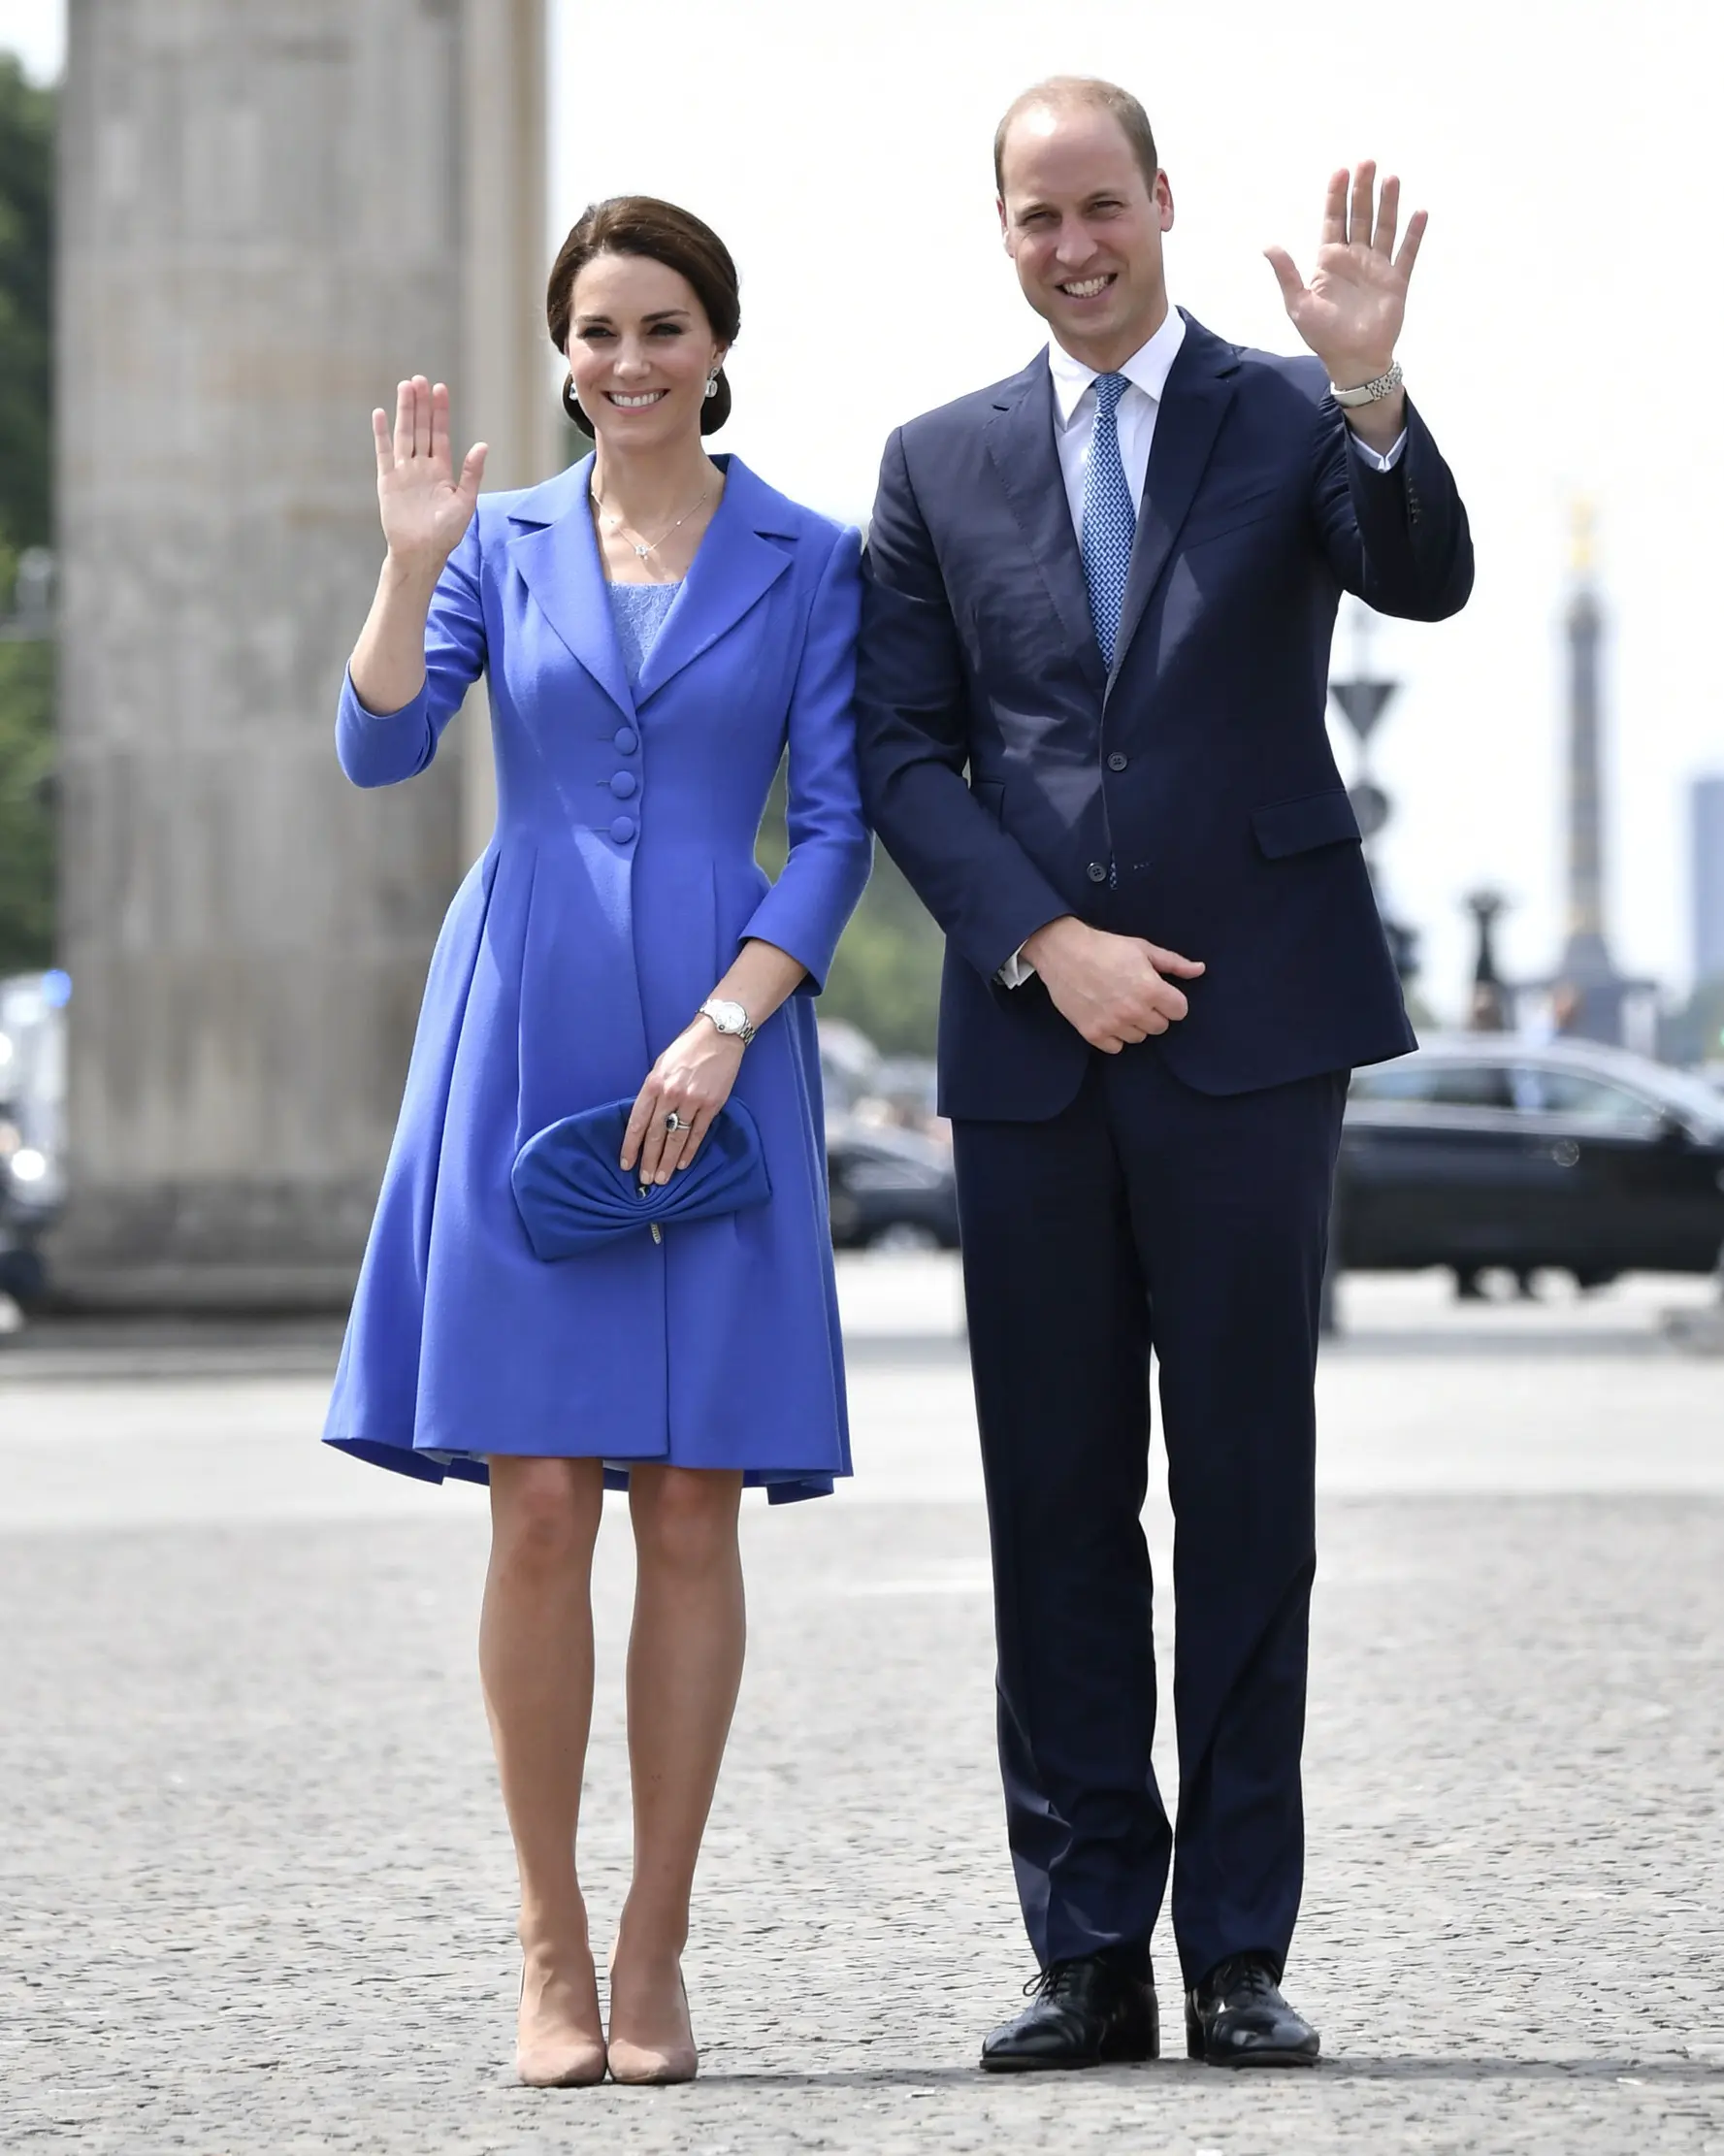 Pangeran William dan Kate Middleton melambaikan tangan sambil berpose di depan Gerbang Brandenburg di Berlin, Rabu (19/7). Pangeran William terlihat mengenakan setelan biru navy model klasik dan dasi biru untuk mengimbangi sang istri (John MACDOUGALL/AFP)